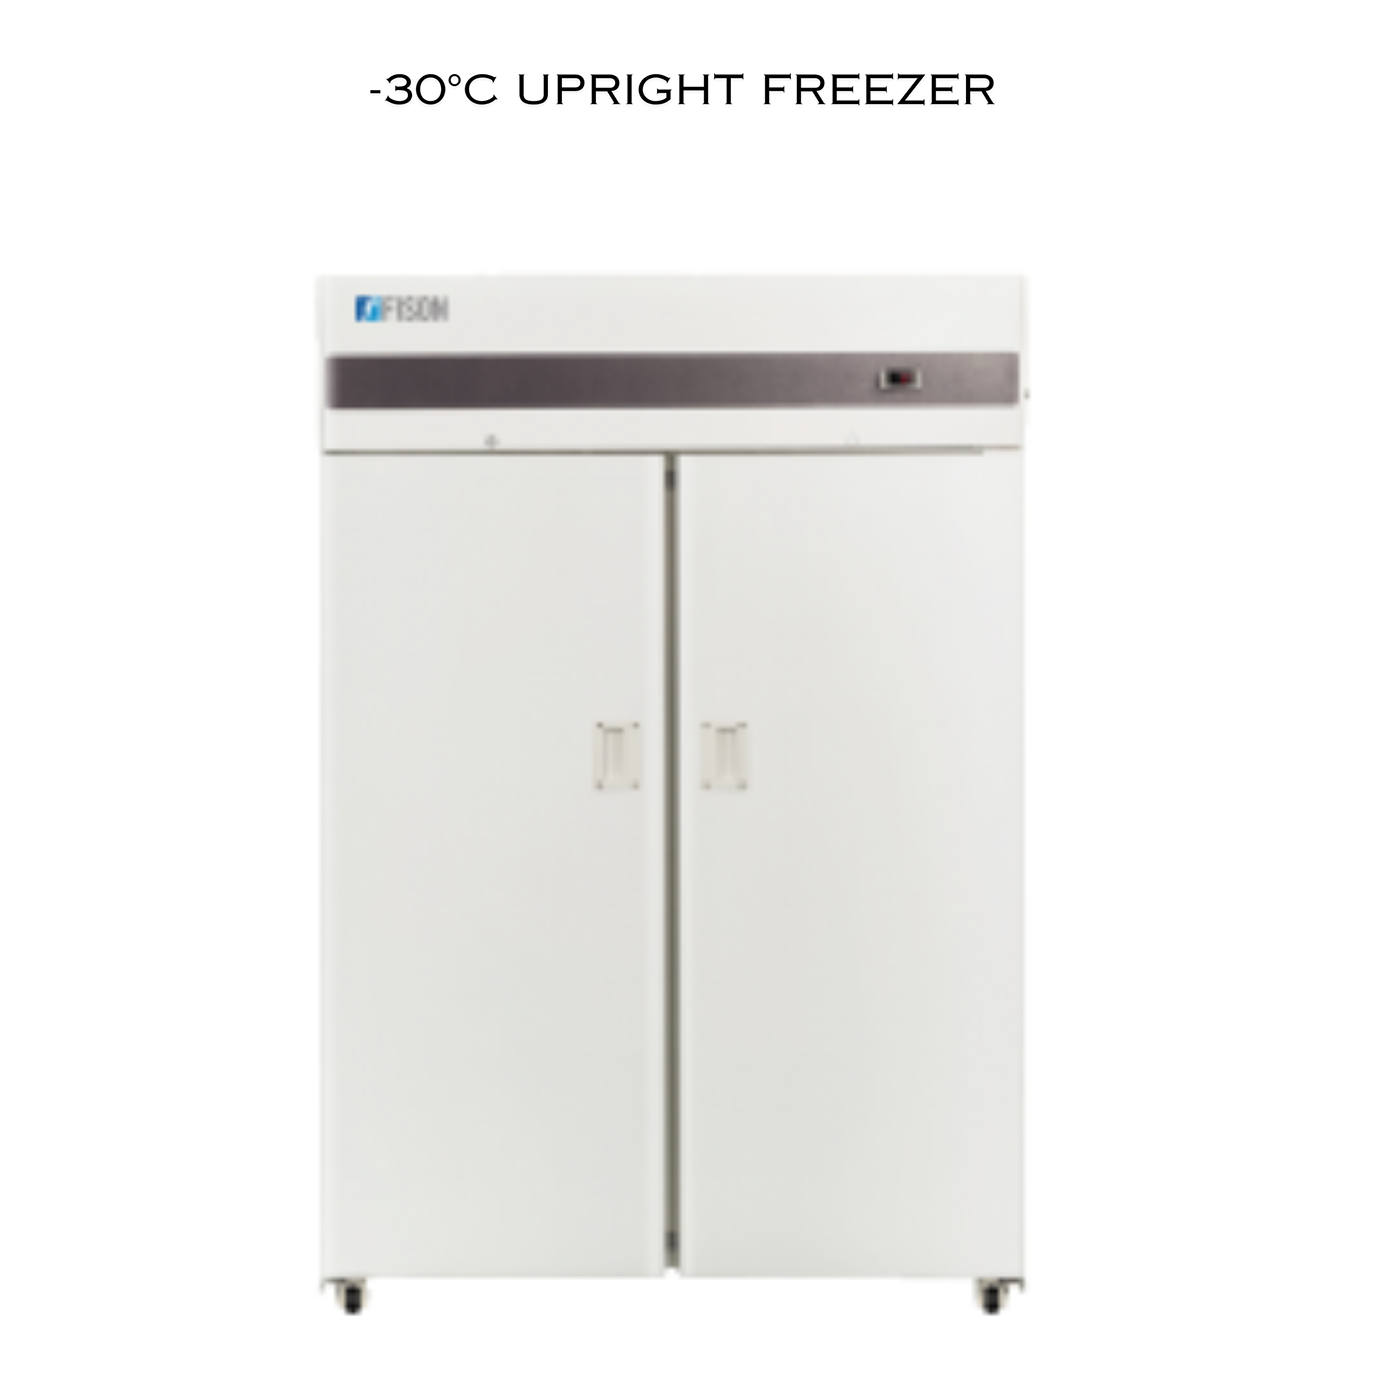 Biomedical Freezer Cryogenic Freezer Industrial freezer Laboratory freezer